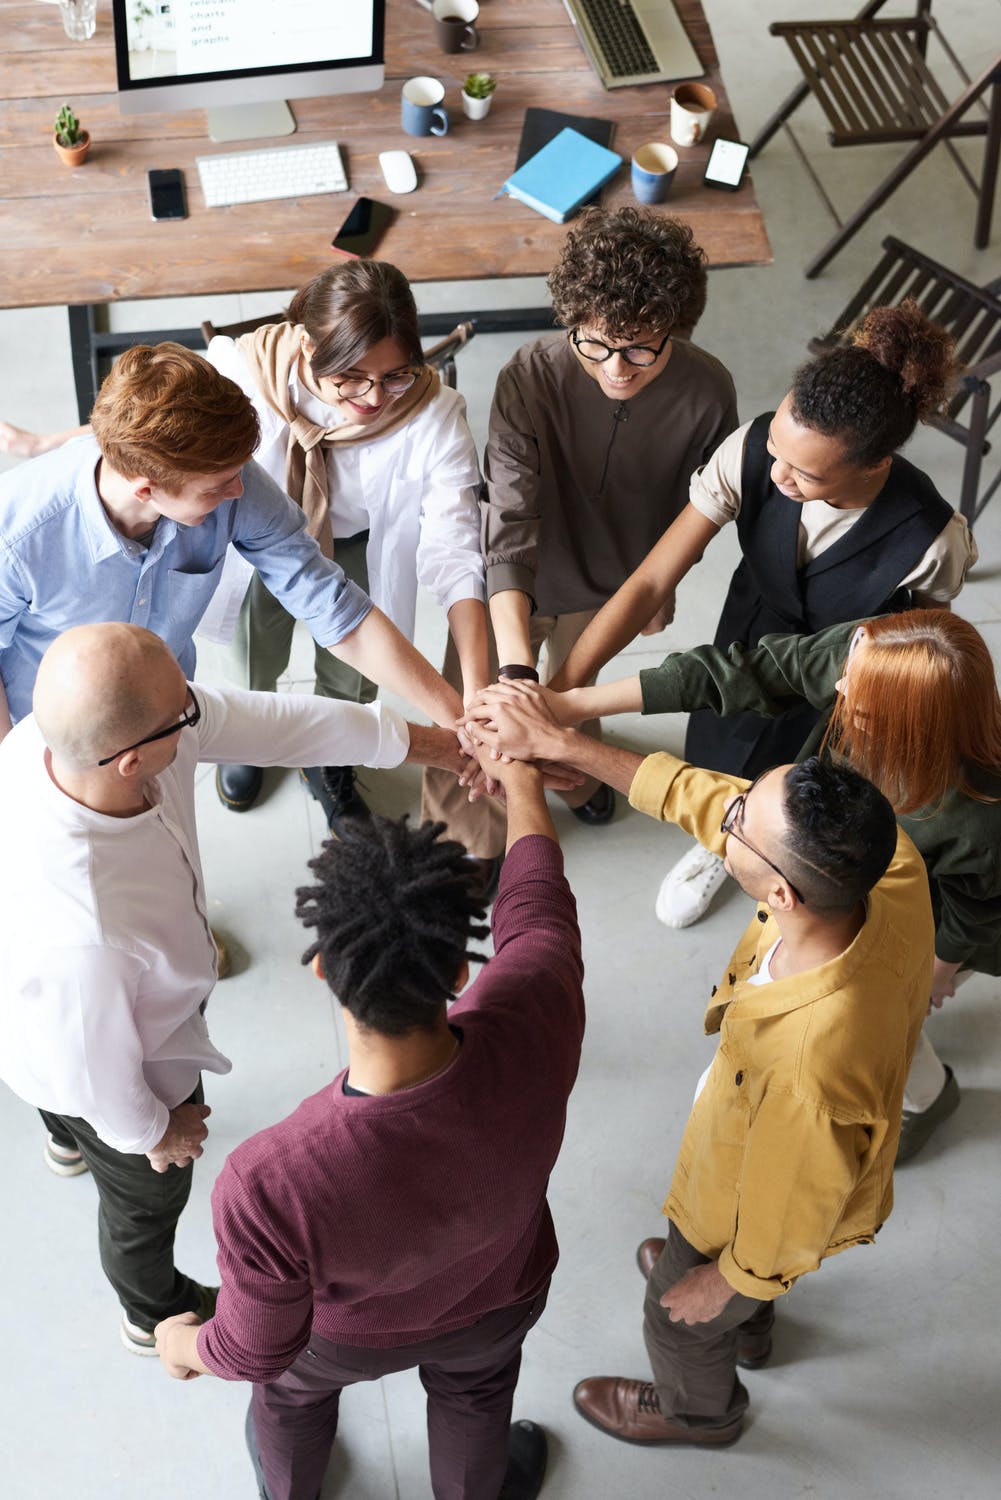 Photographie illustrant Les 5 piliers de l’Employee Value Proposition (EVP). On y voit 9 personnes avec leurs mains au milieu en signe de solidarité et de travail d'équipe. 